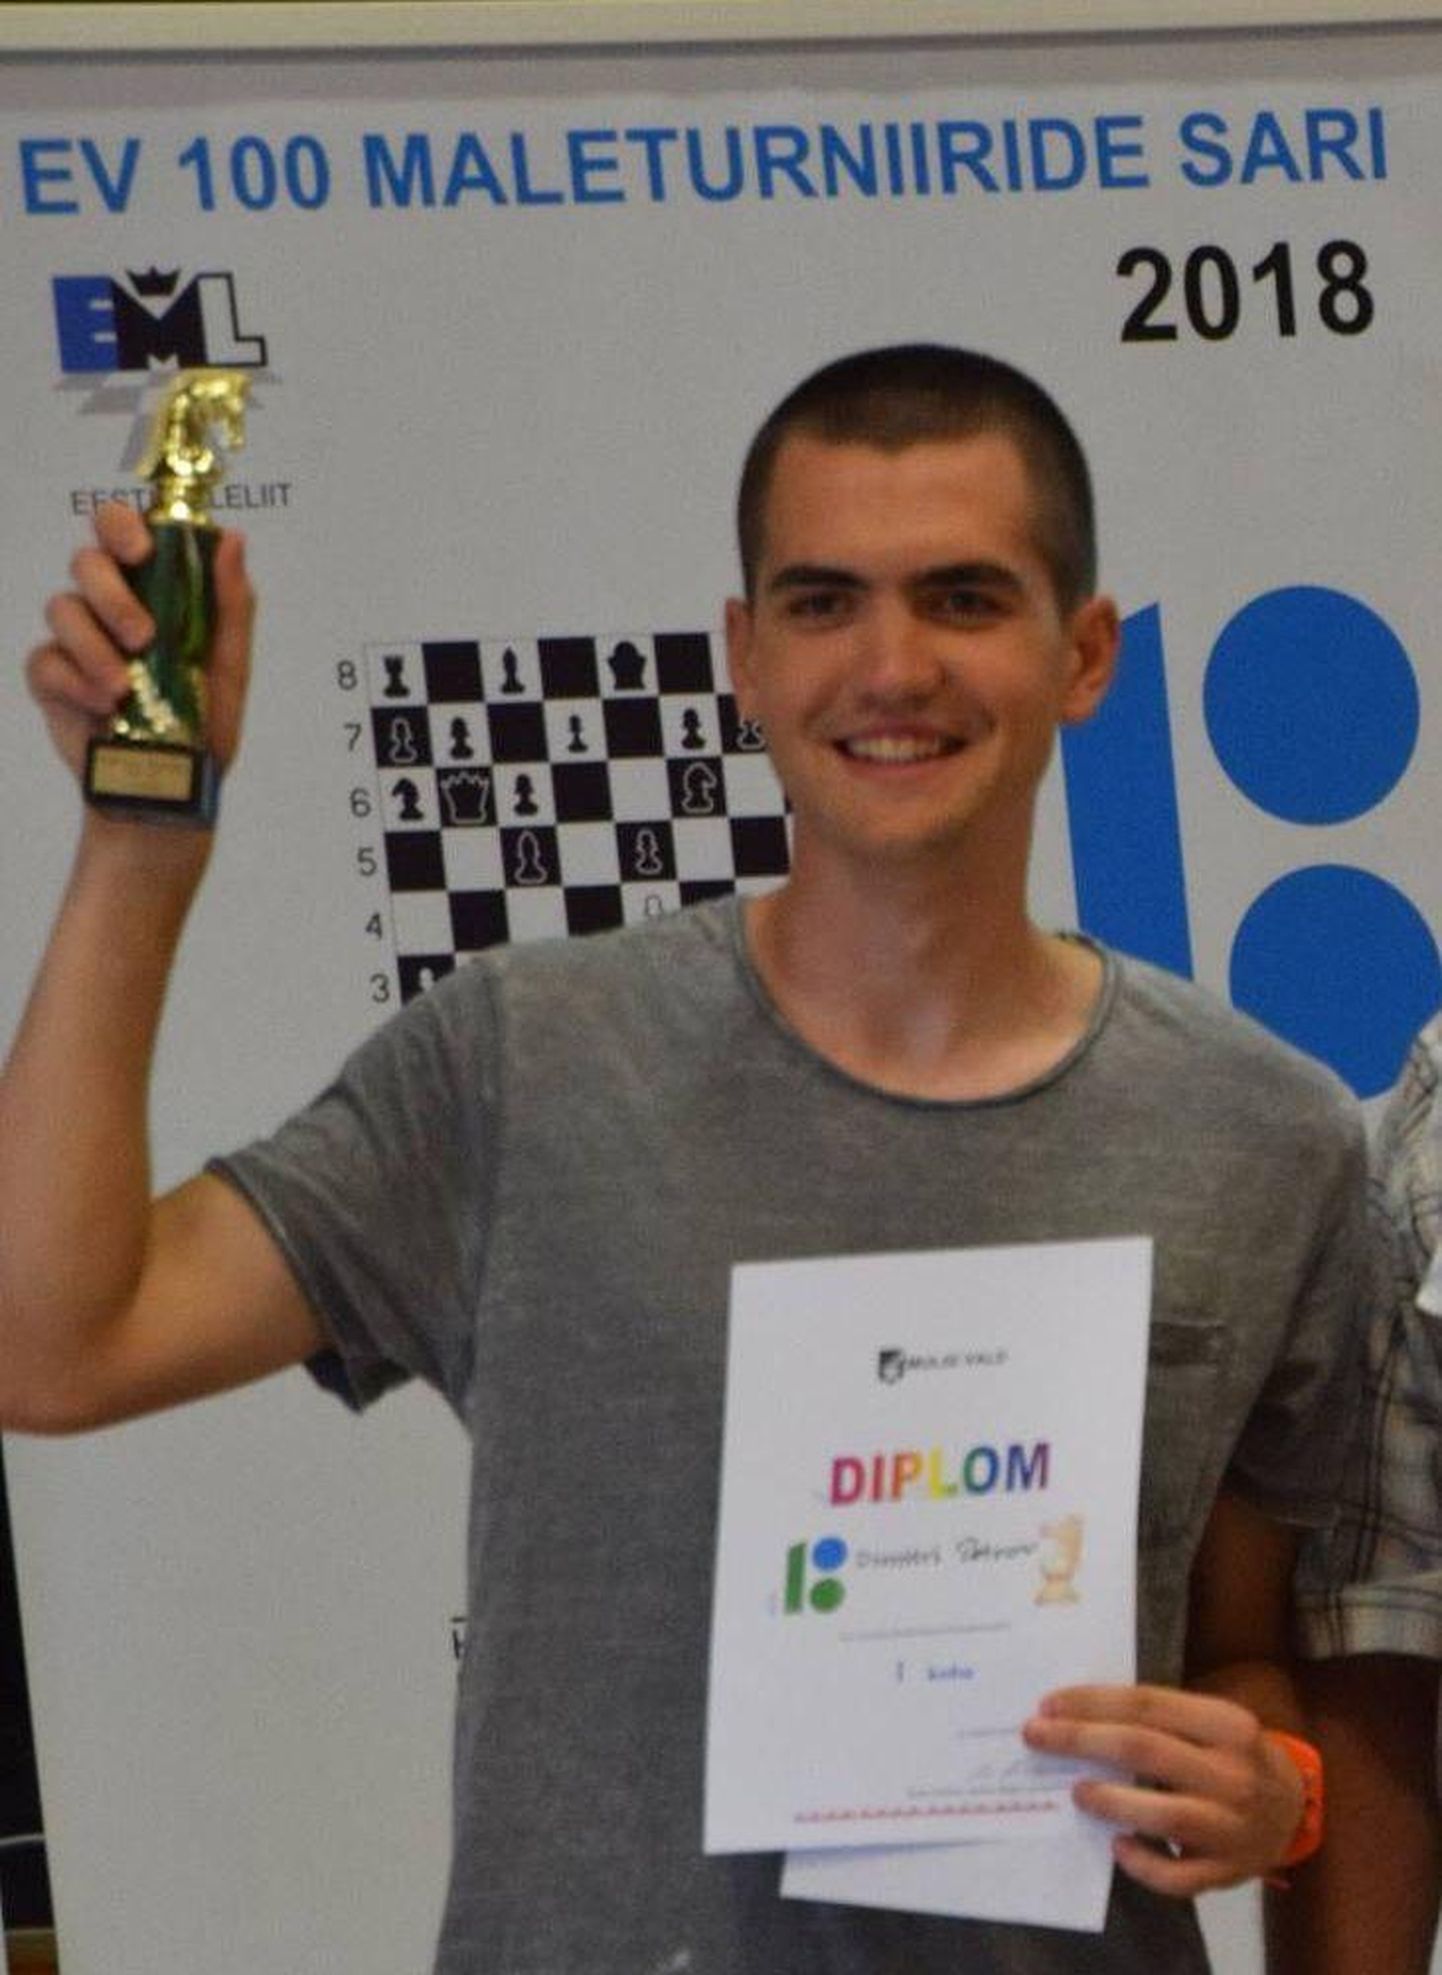 «Karksi ratsu» kiirmaleturniiri võitis Dmitri Petrov.